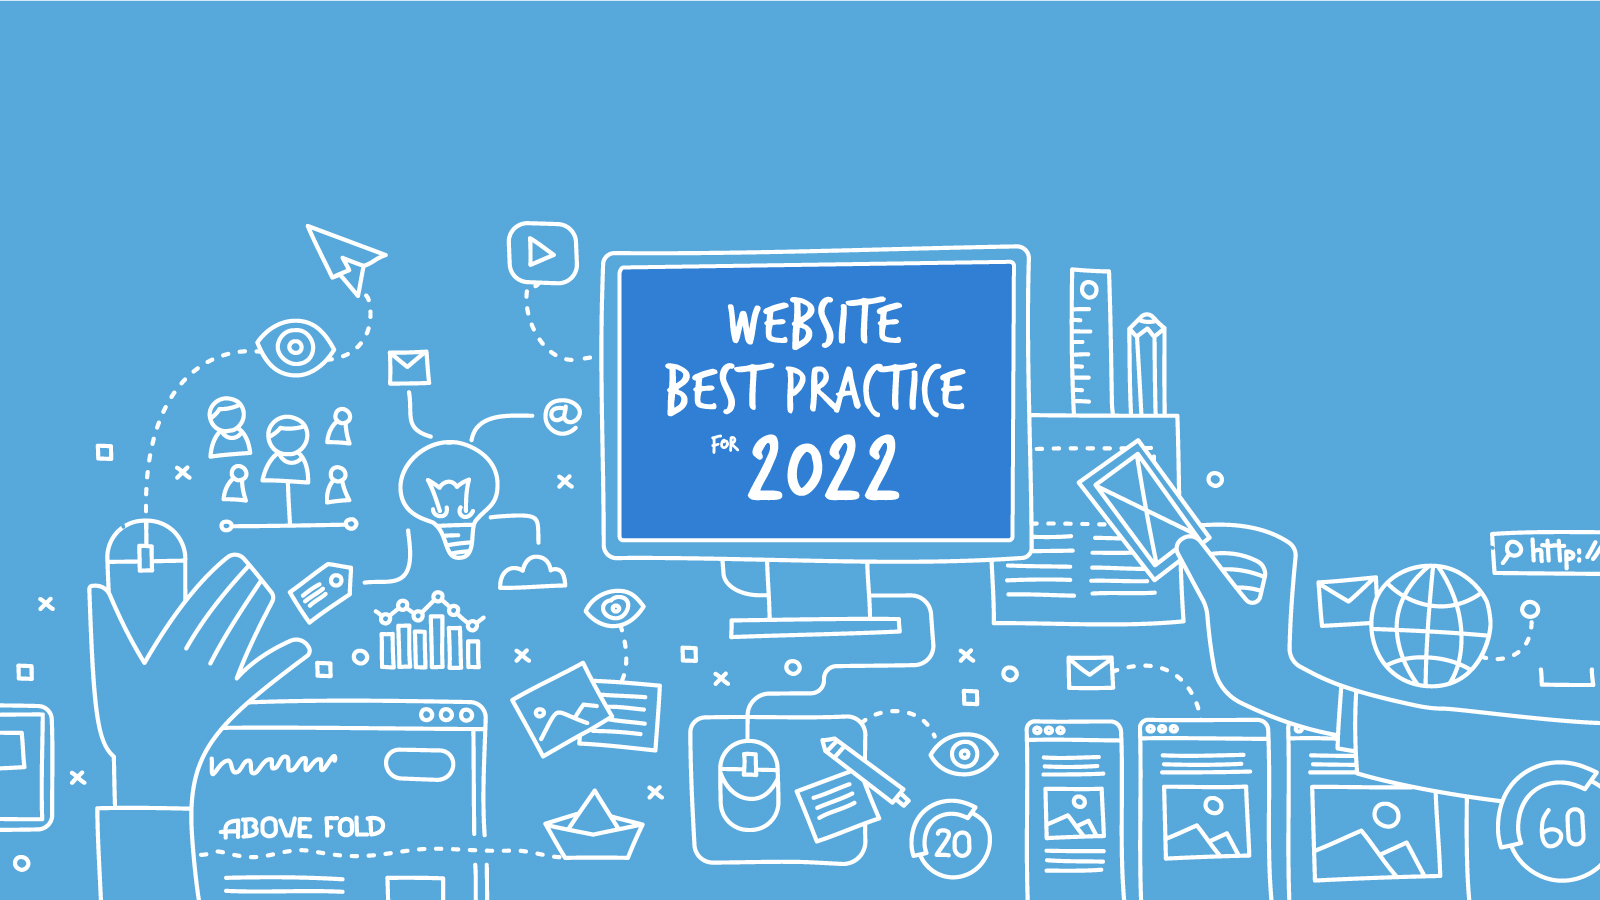 Website Best Practice in 2022